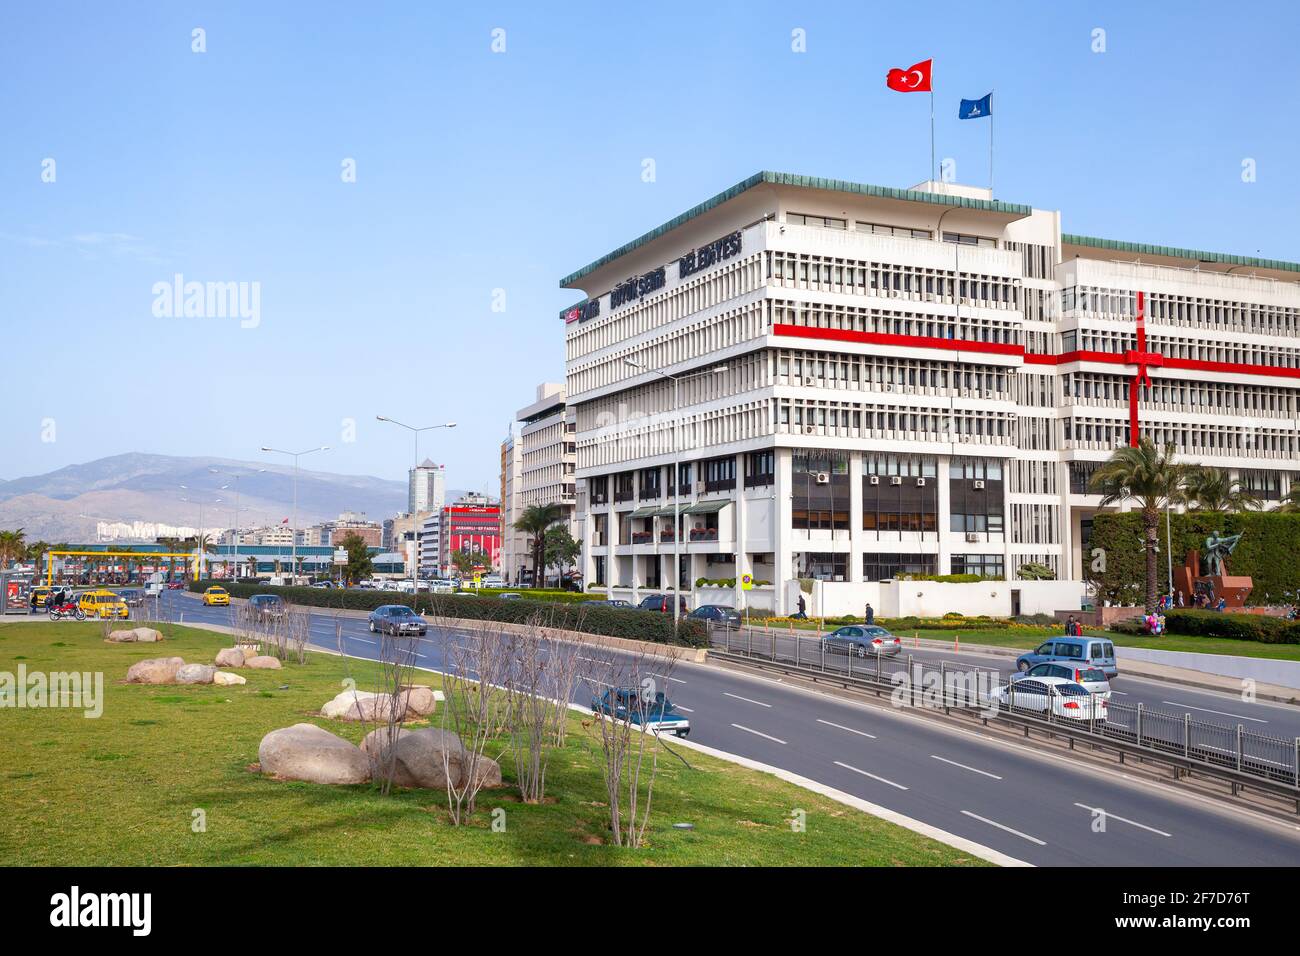 Izmir, Türkei - 5. Februar 2015: Blick auf die Straße mit dem Bürogebäude der Stadtverwaltung Izmir gehen gewöhnliche Menschen auf der Straße Stockfoto